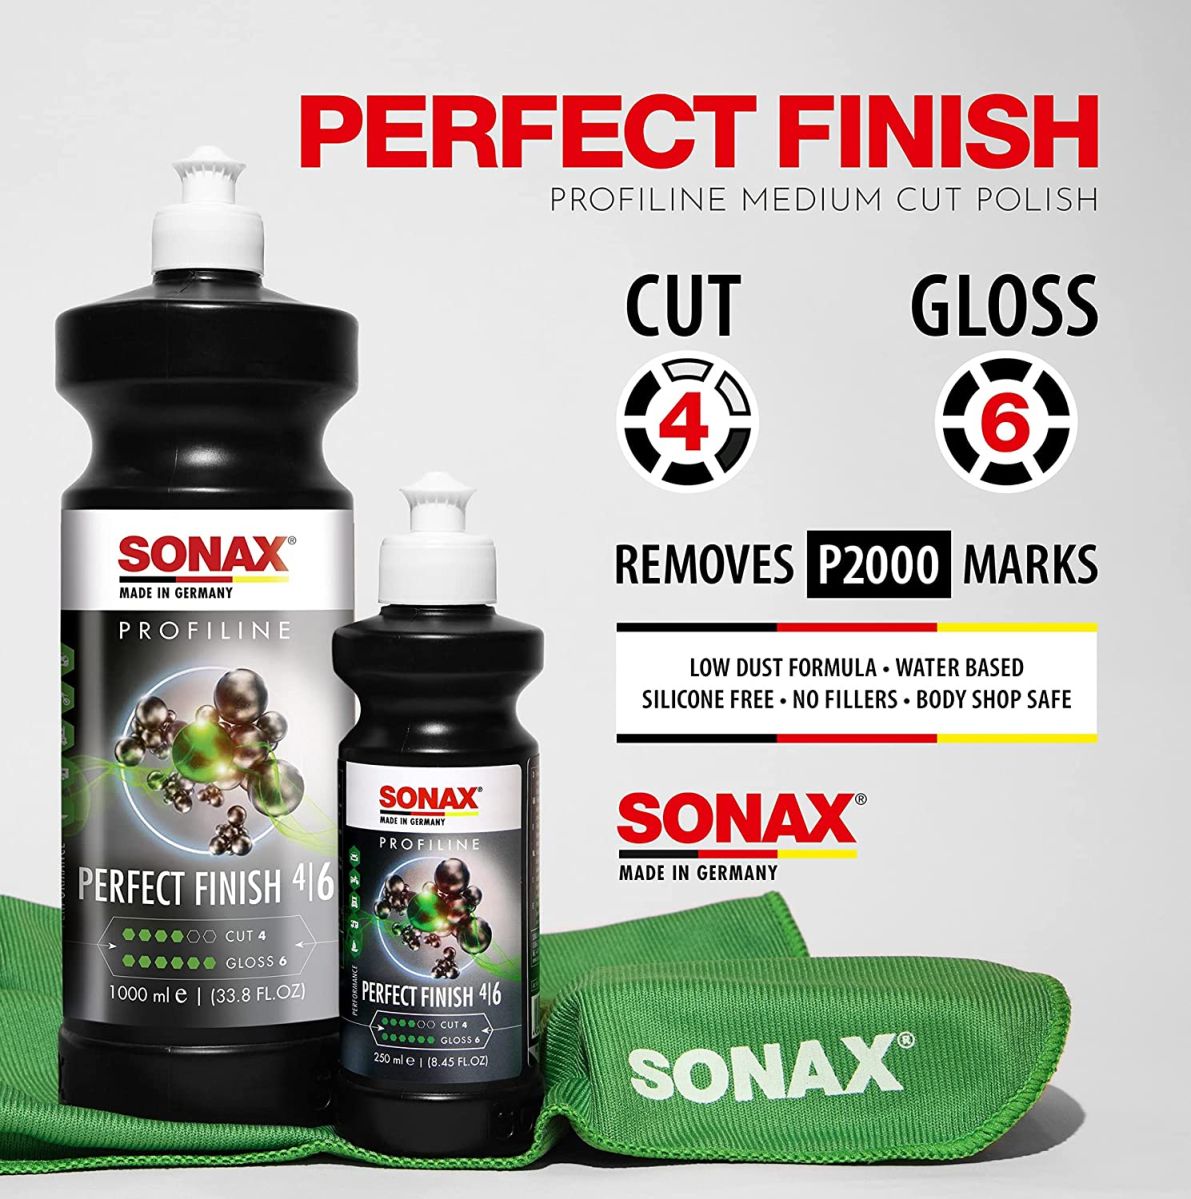 SONAX-Profiline-Perfect-Finish